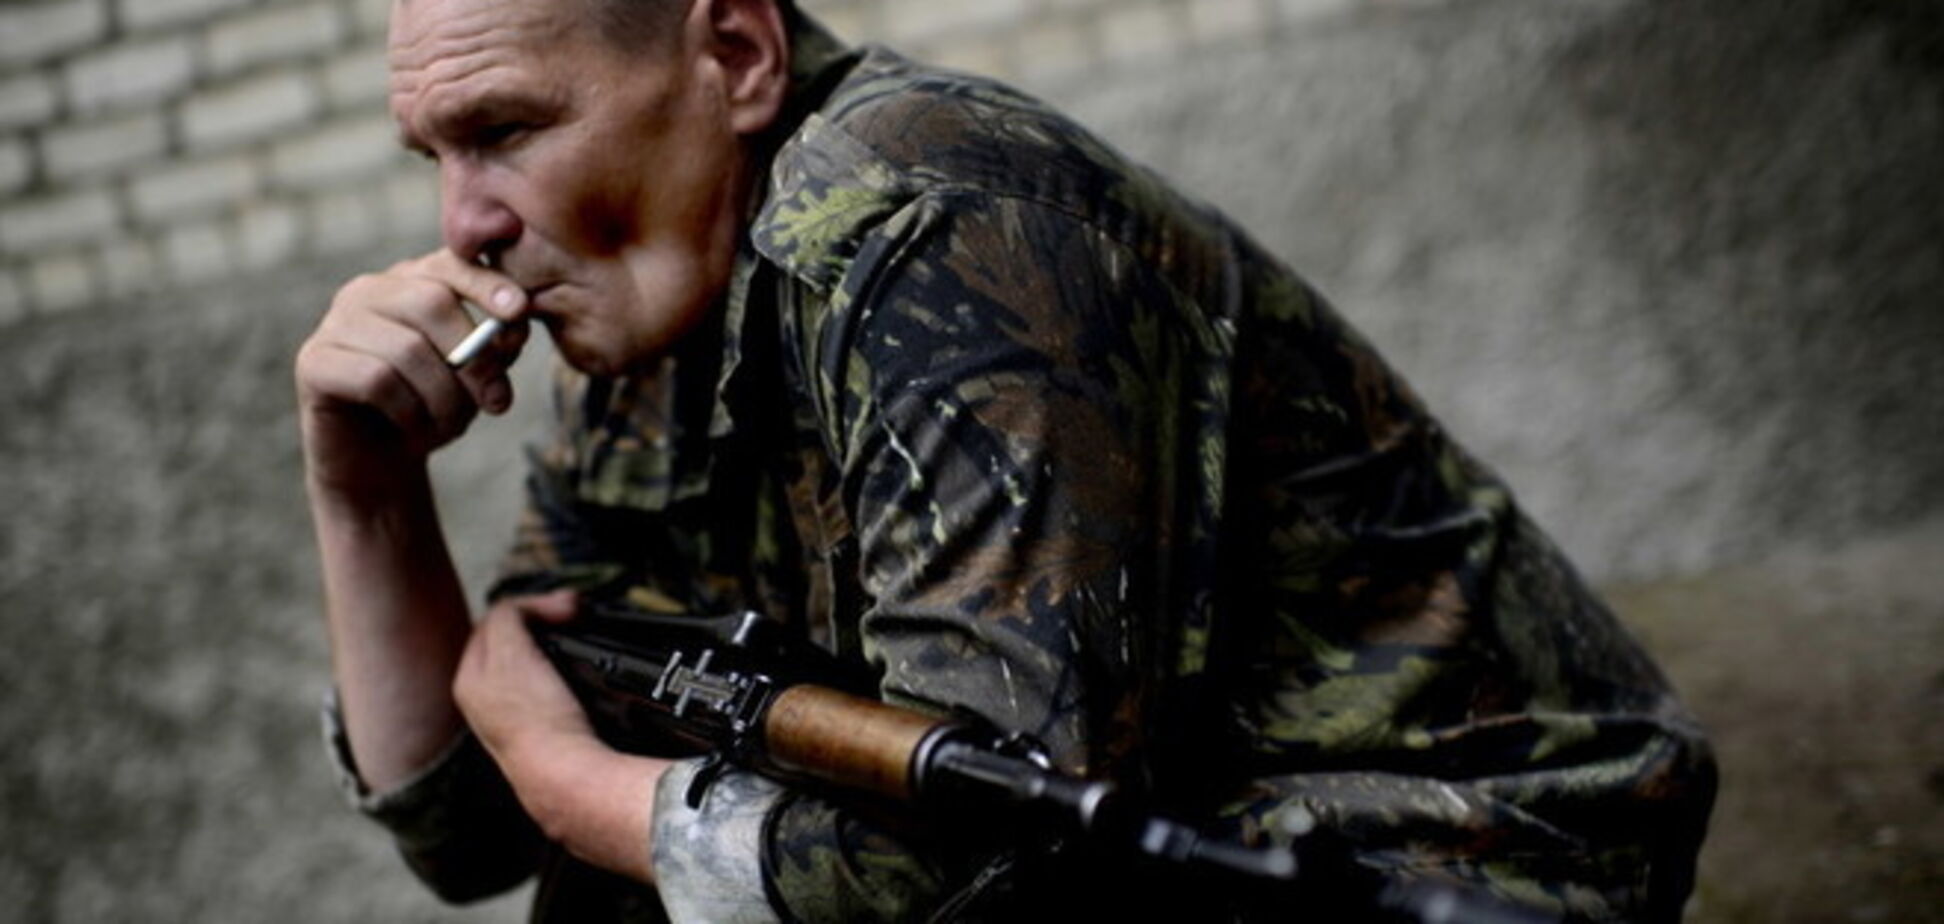 У Донецьку терористи напали на тюремників з метою роздобути зброю